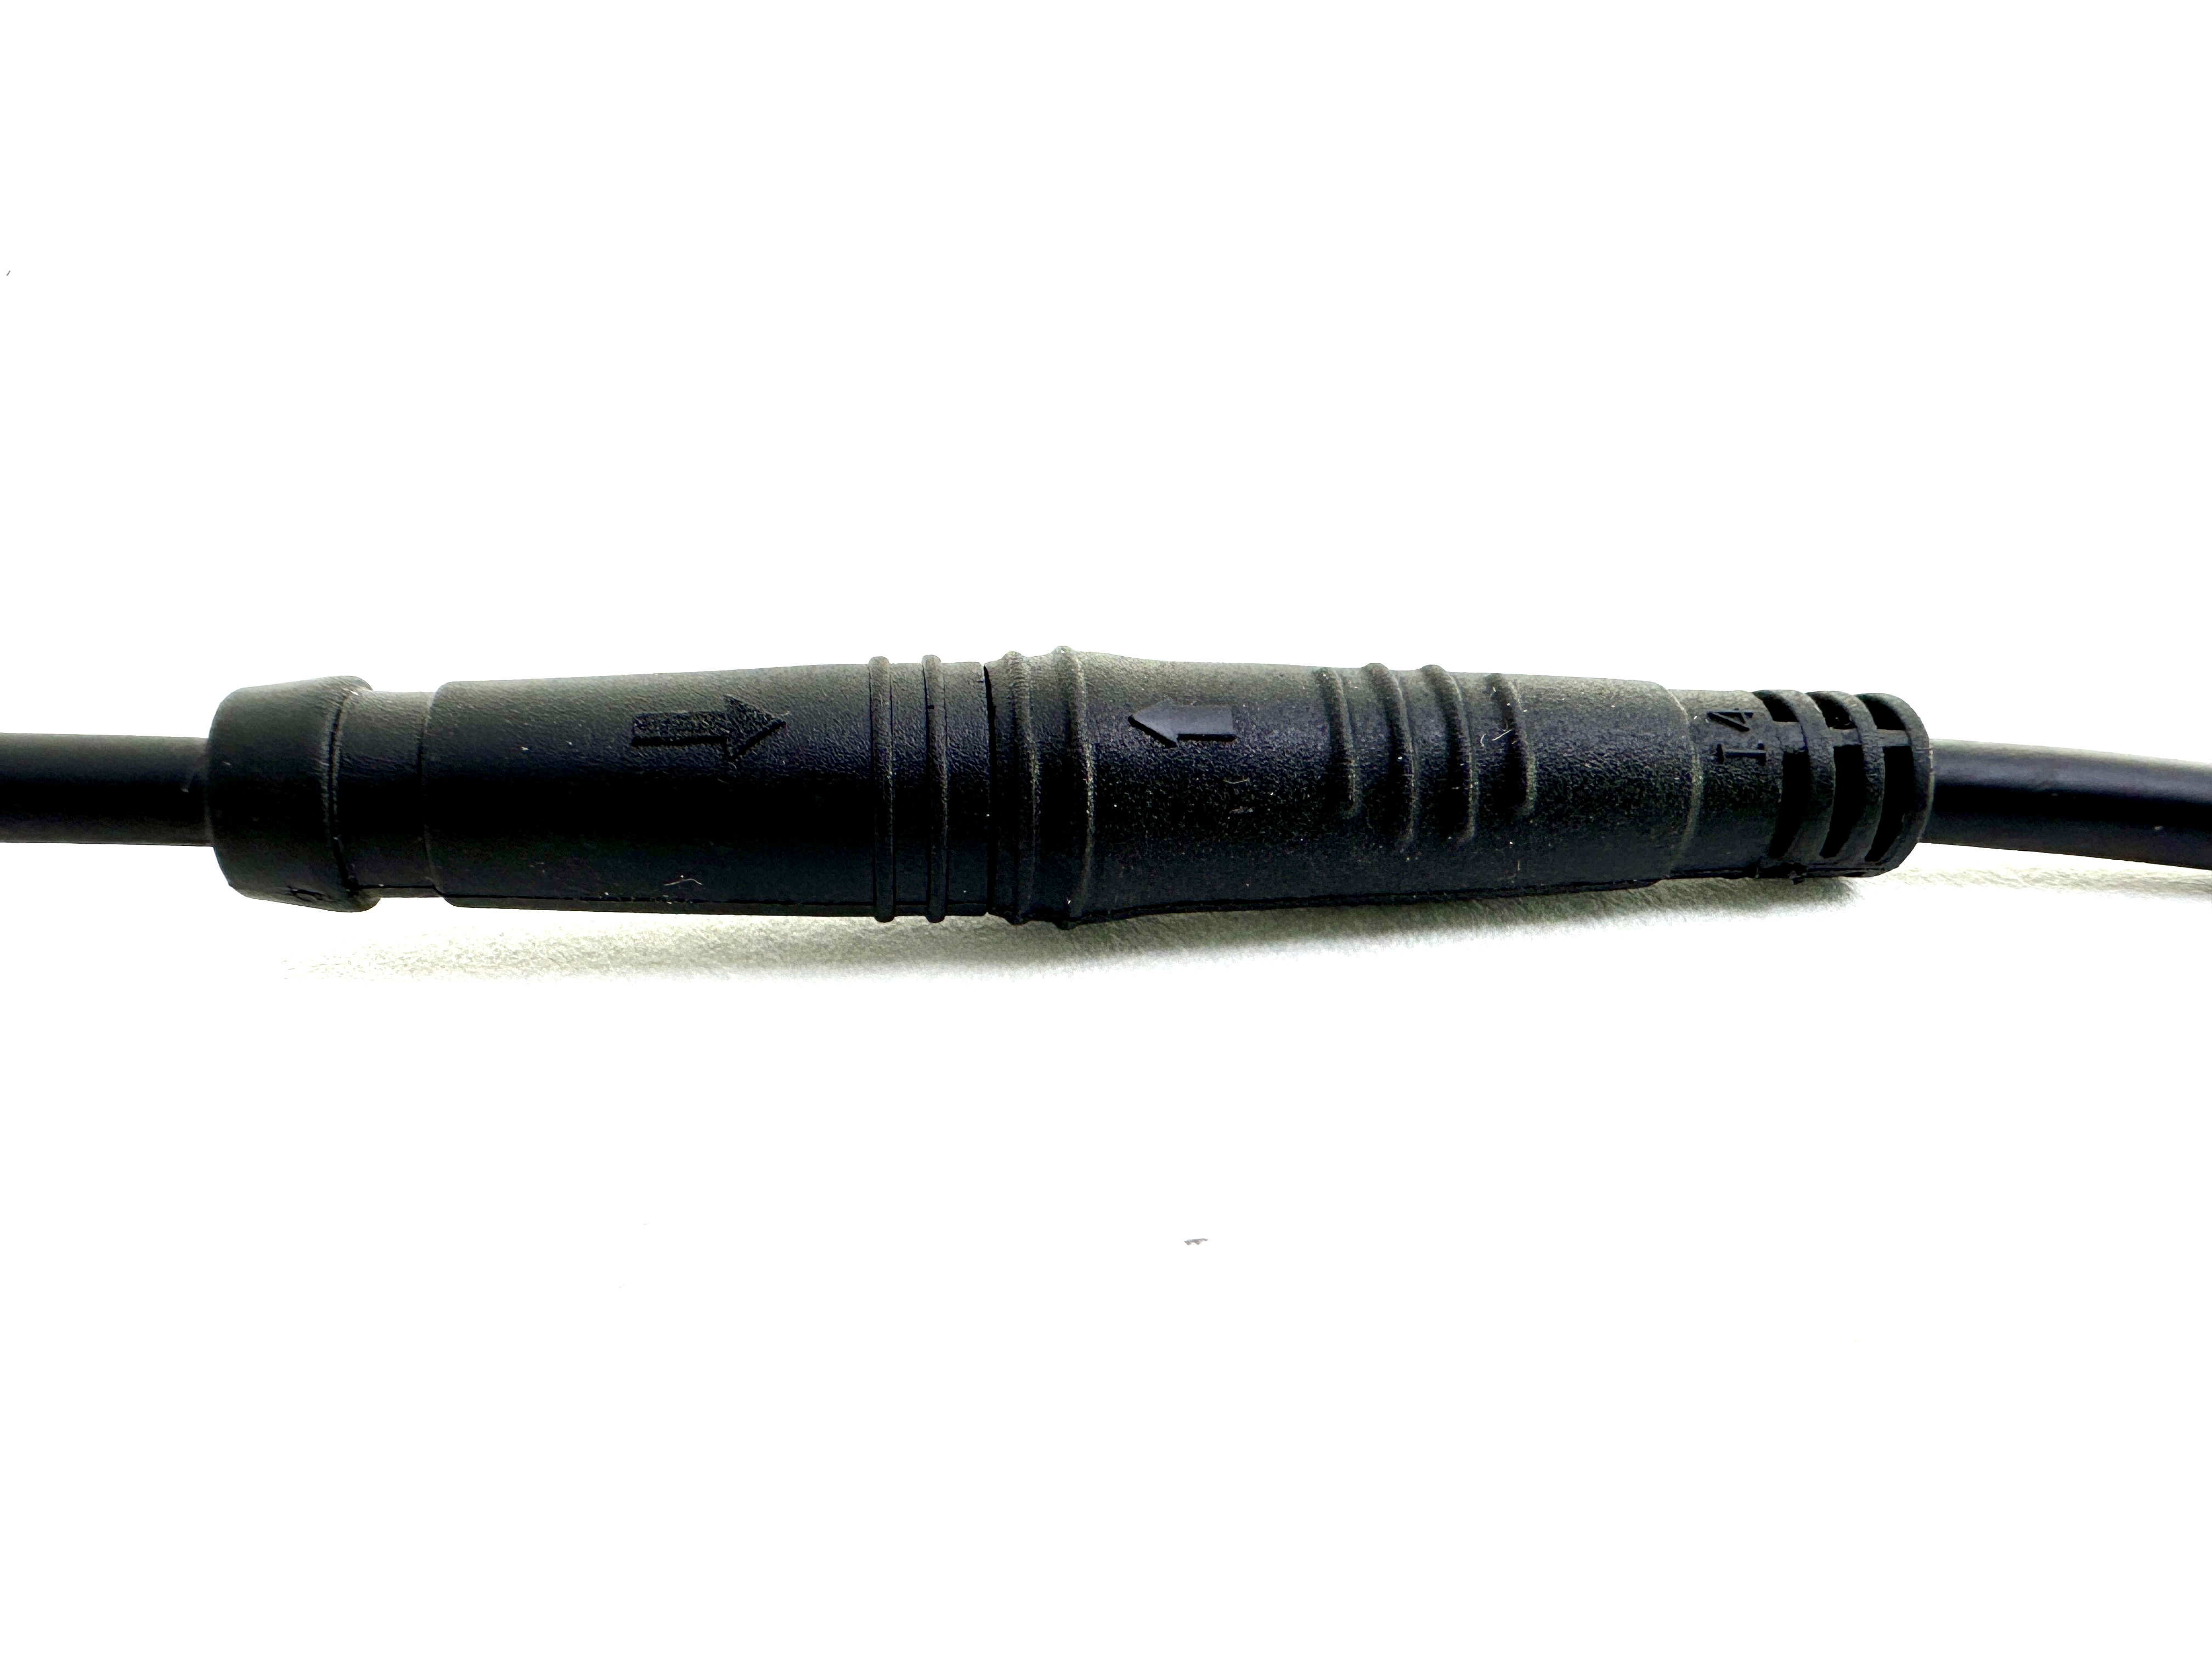 HIGO / Julet Câble adaptateur 11 cm pour Ebike, 2 PIN mâle à mâle, rouge